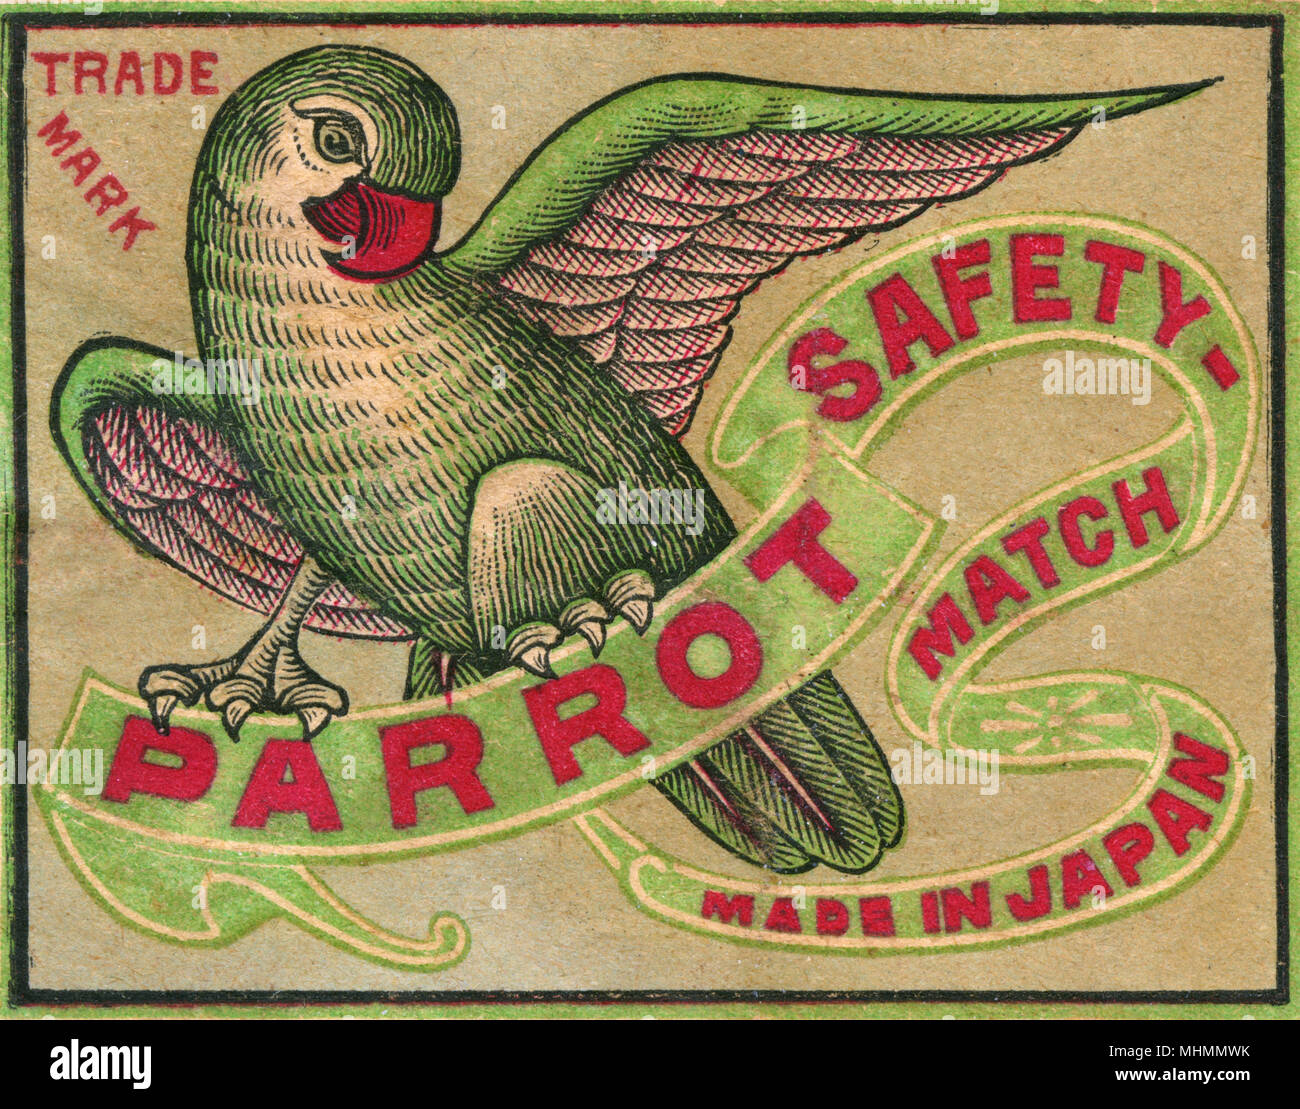 Ancienne étiquette Allumettes Japon Parrot pour les allumettes de sûreté fabriqué au Japon Date : ch. Années 1910 Banque D'Images